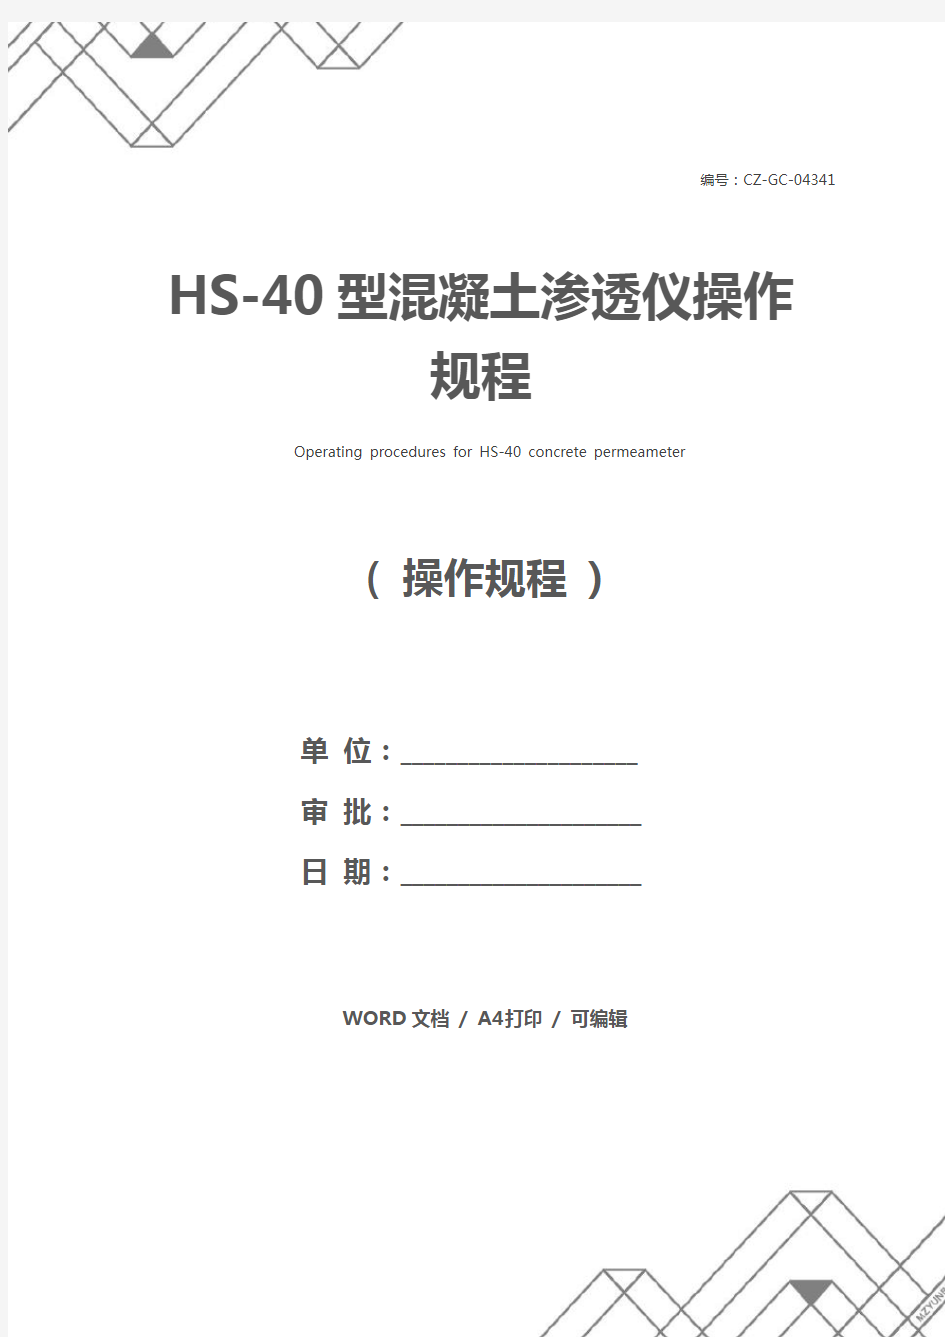 HS-40型混凝土渗透仪操作规程